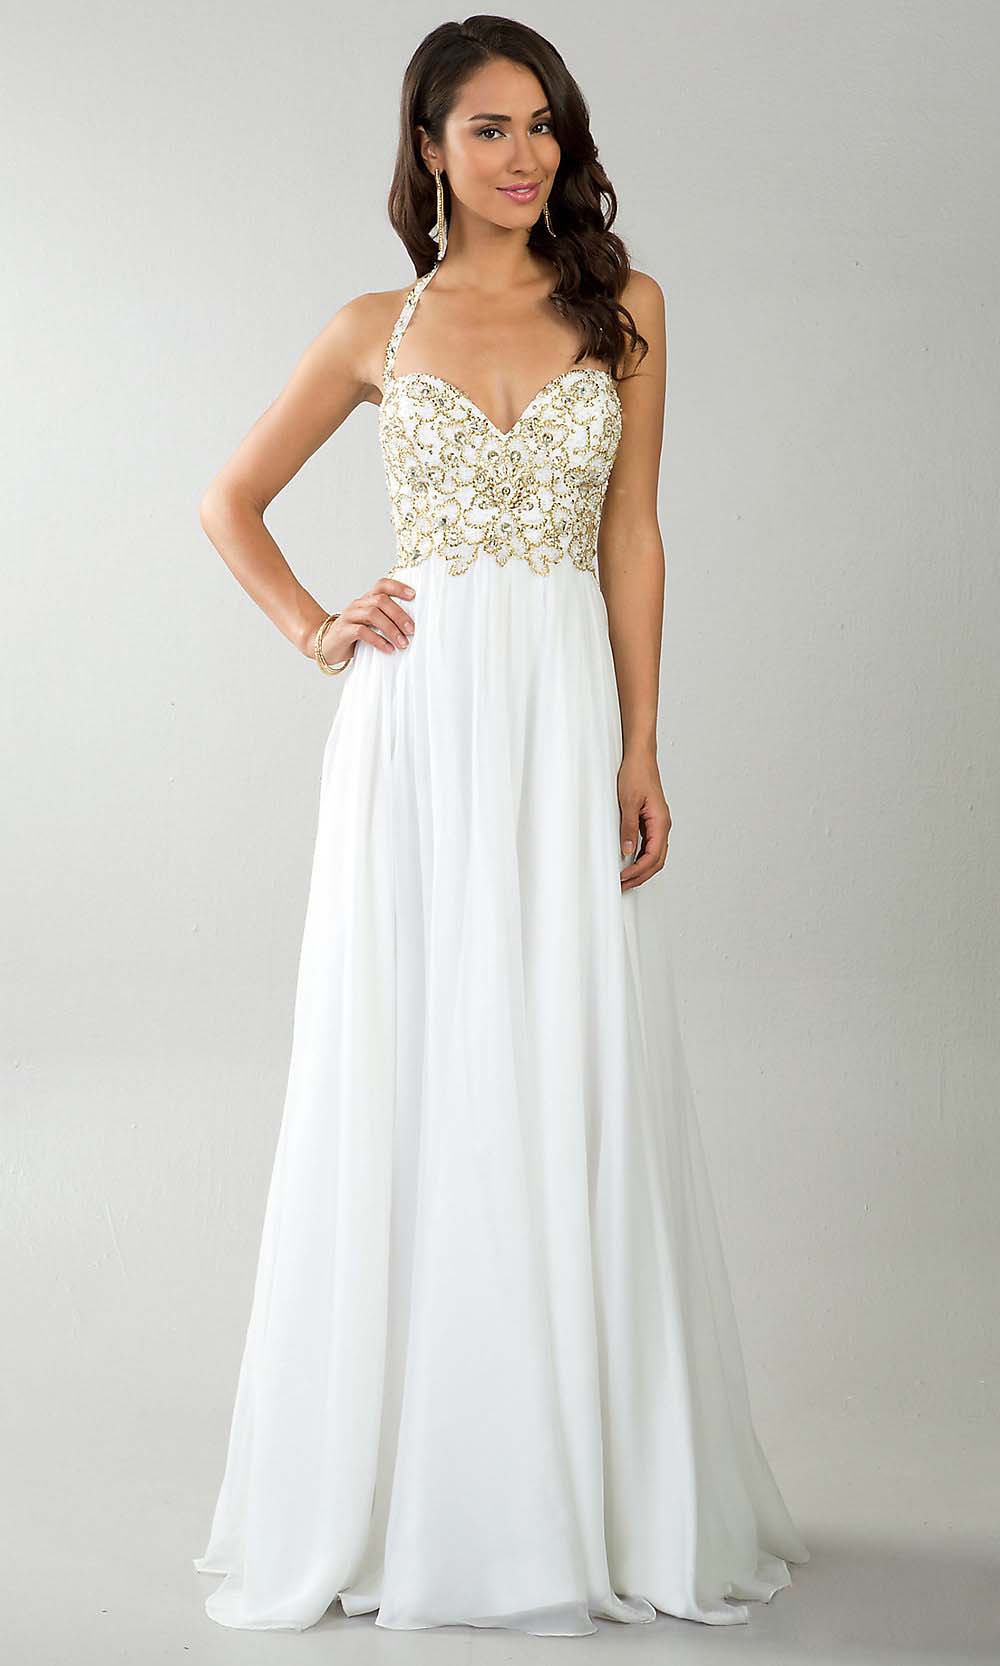 White Long Prom Dresses - Long Dresses Online